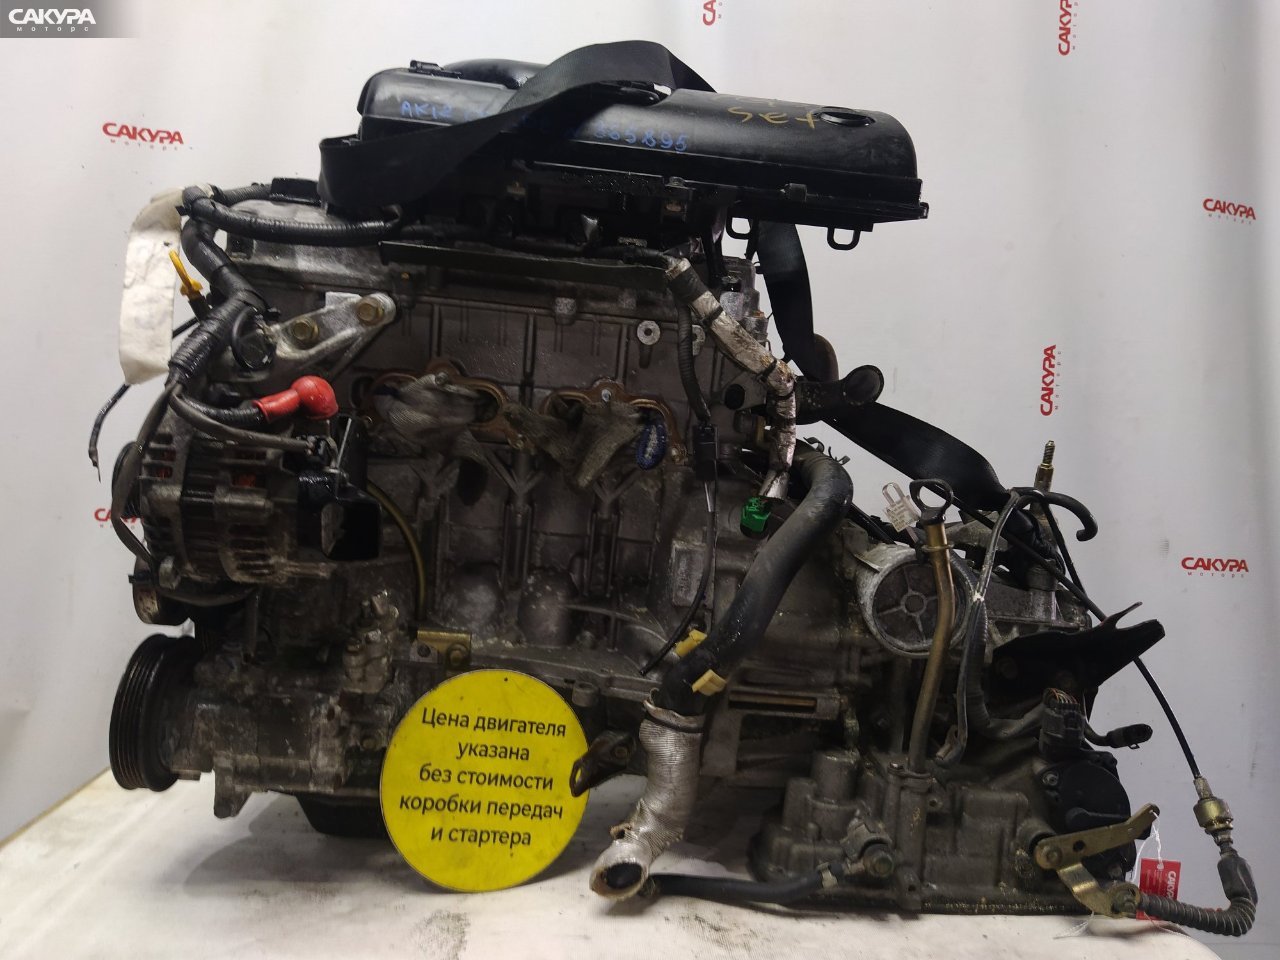 Двигатель Nissan March AK12 CR12DE: купить в Сакура Красноярск.